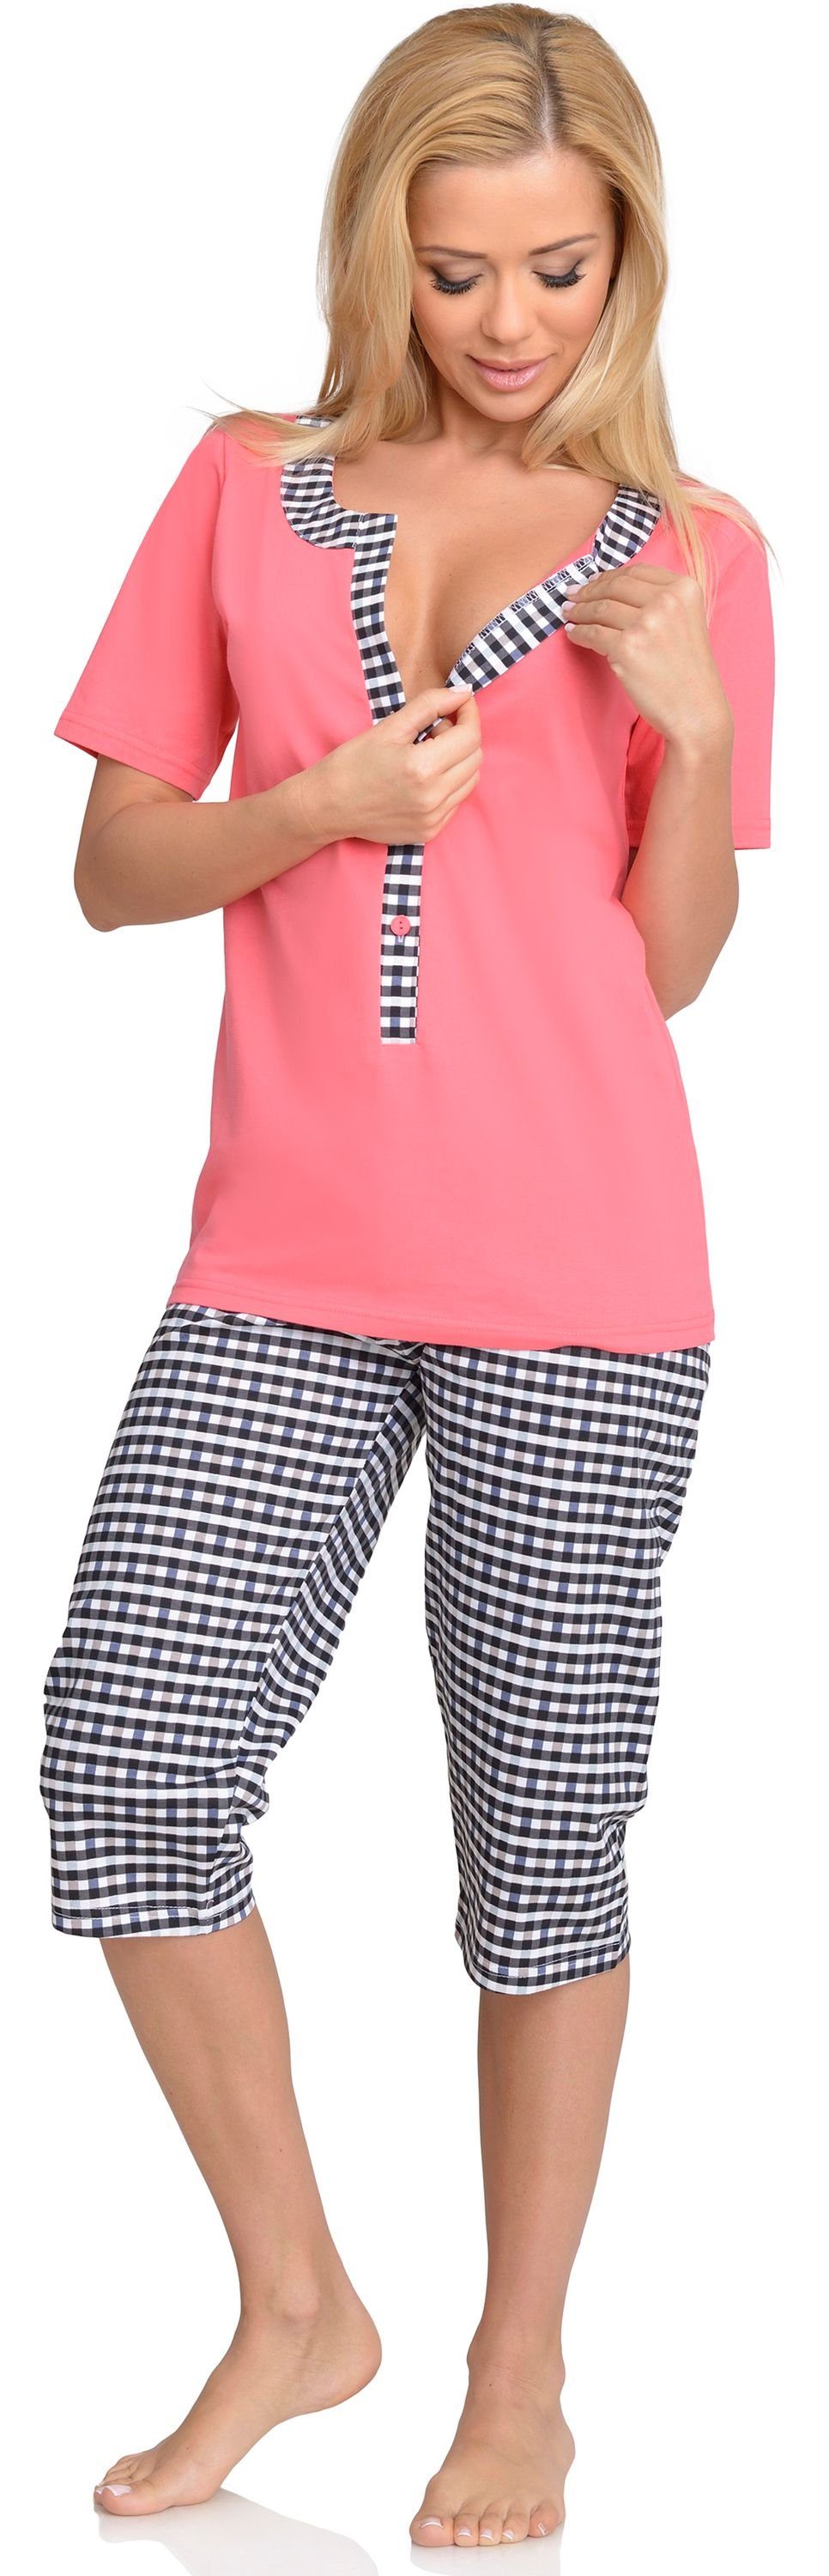 Be Mammy Umstandspyjama Damen Schlafanzug Stillpyjama Coral-1 H2L2N2